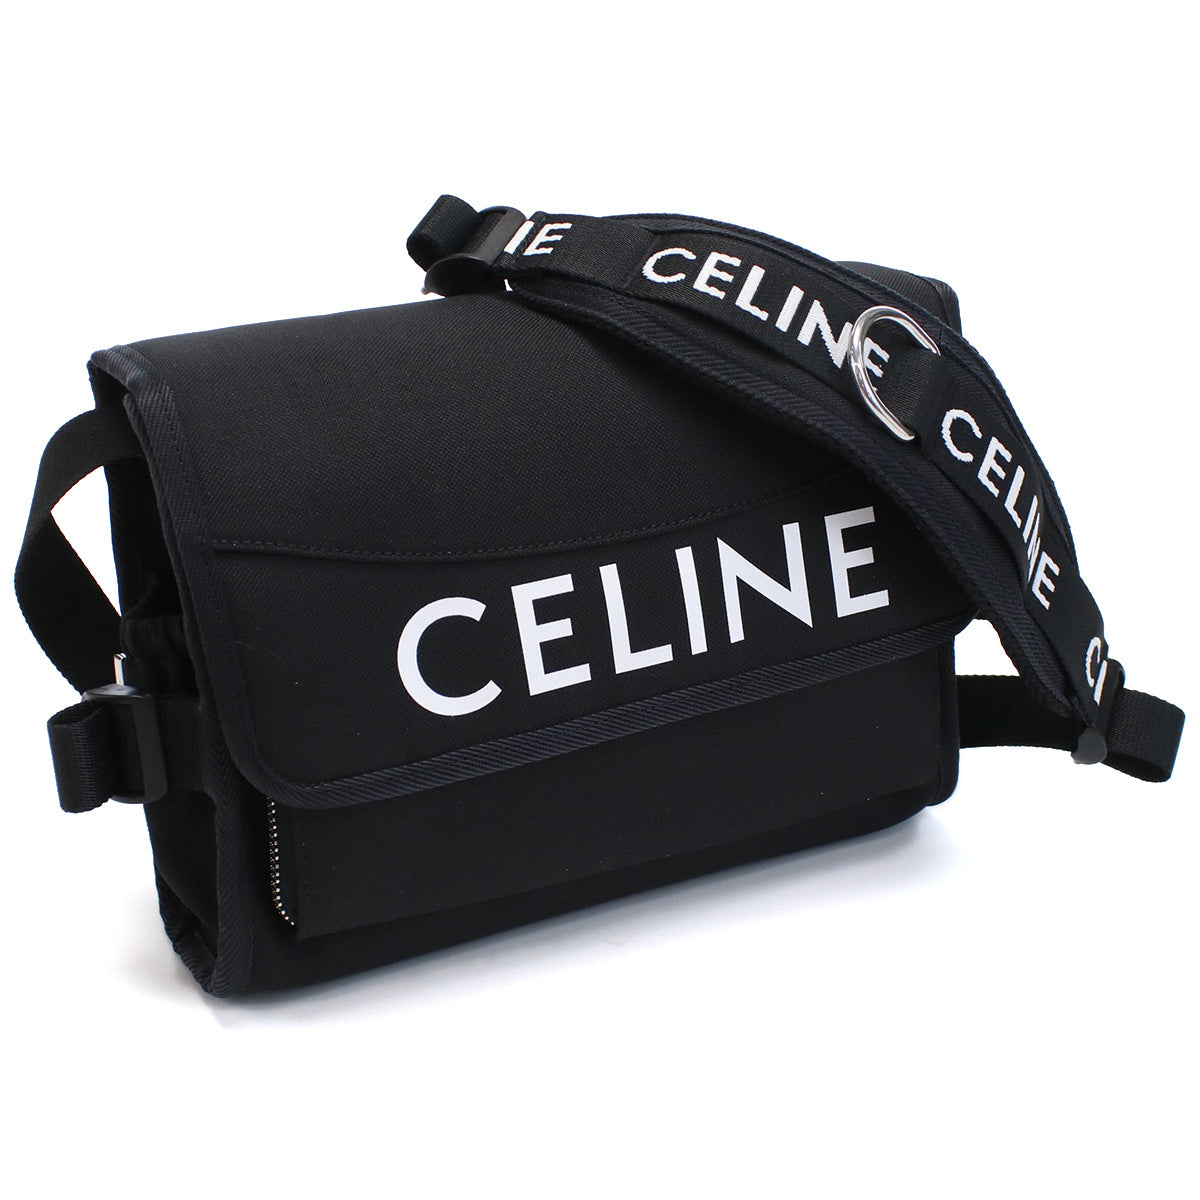 CELINE セリーヌ 11006 ショルダーバッグ BLACK ブラック メンズ